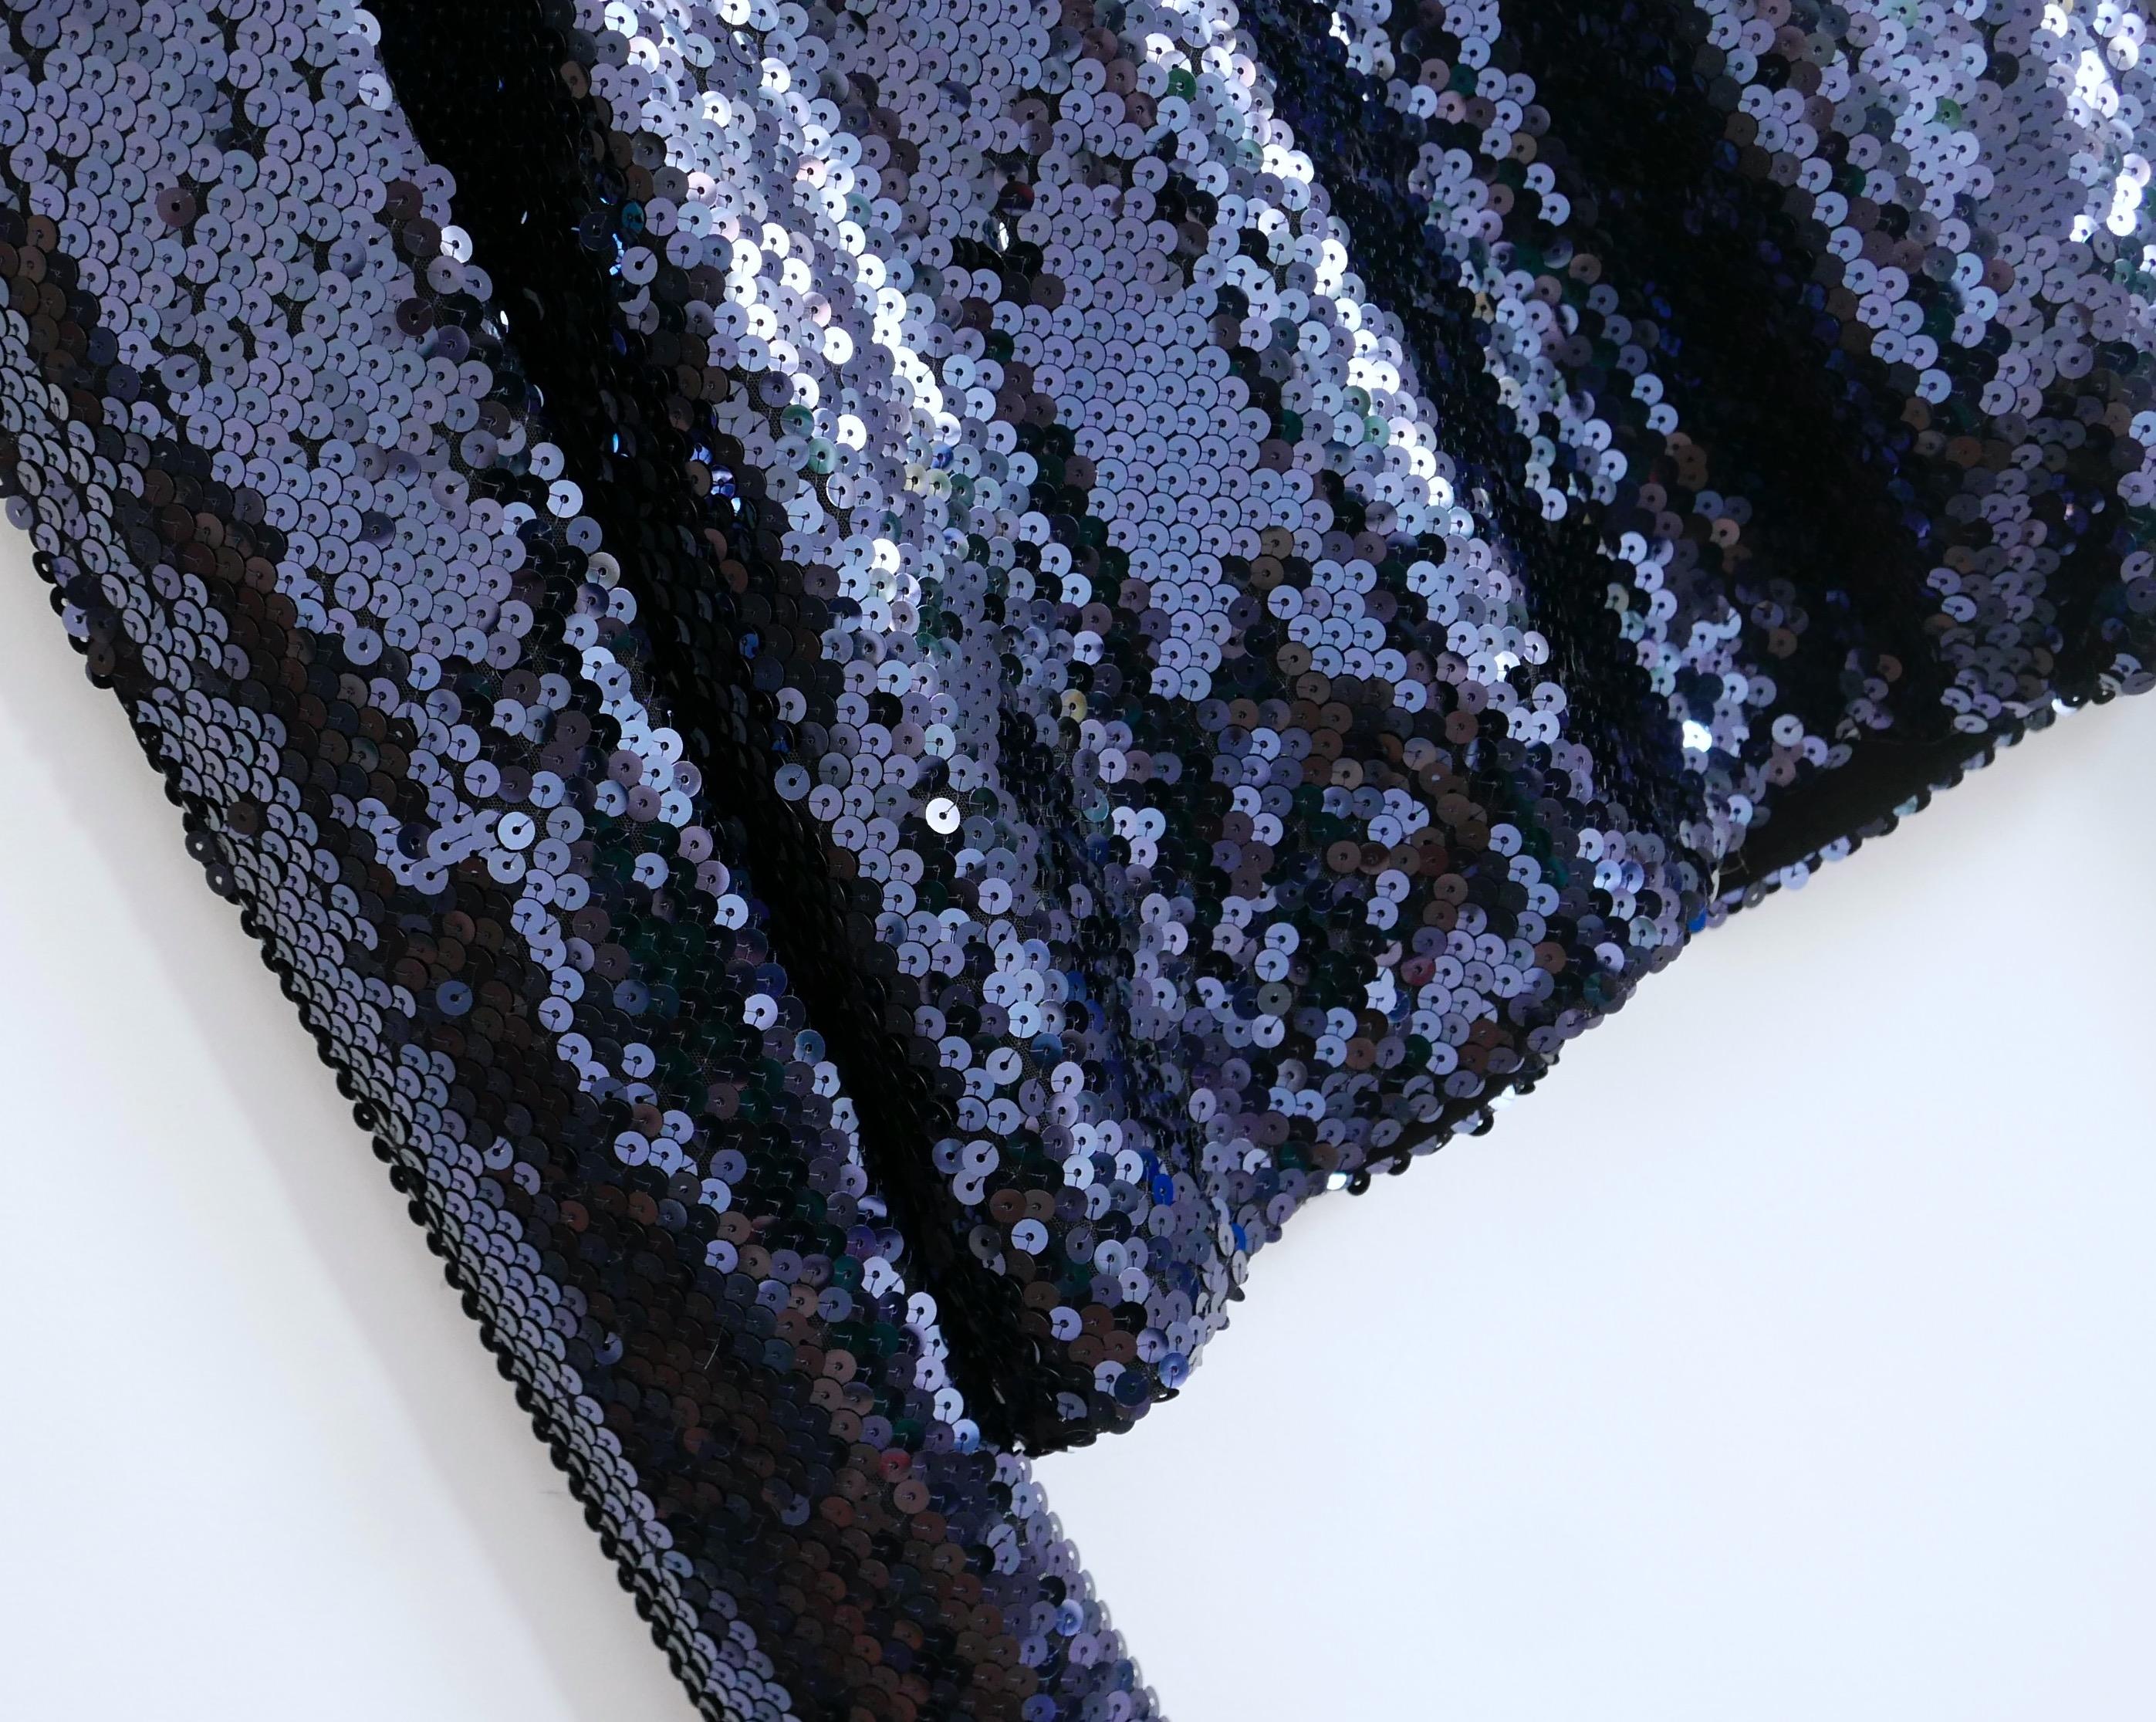 Absolument magnifique Dior sequin embellis top de la Collection Pre-Fall 2015 - Look 33 sur le défilé (j'ai la robe qu'il a été jumelé avec listé aussi). Acheté pour £1750 et porté une fois. 
Réalisée en polyamide extensible, elle est entièrement